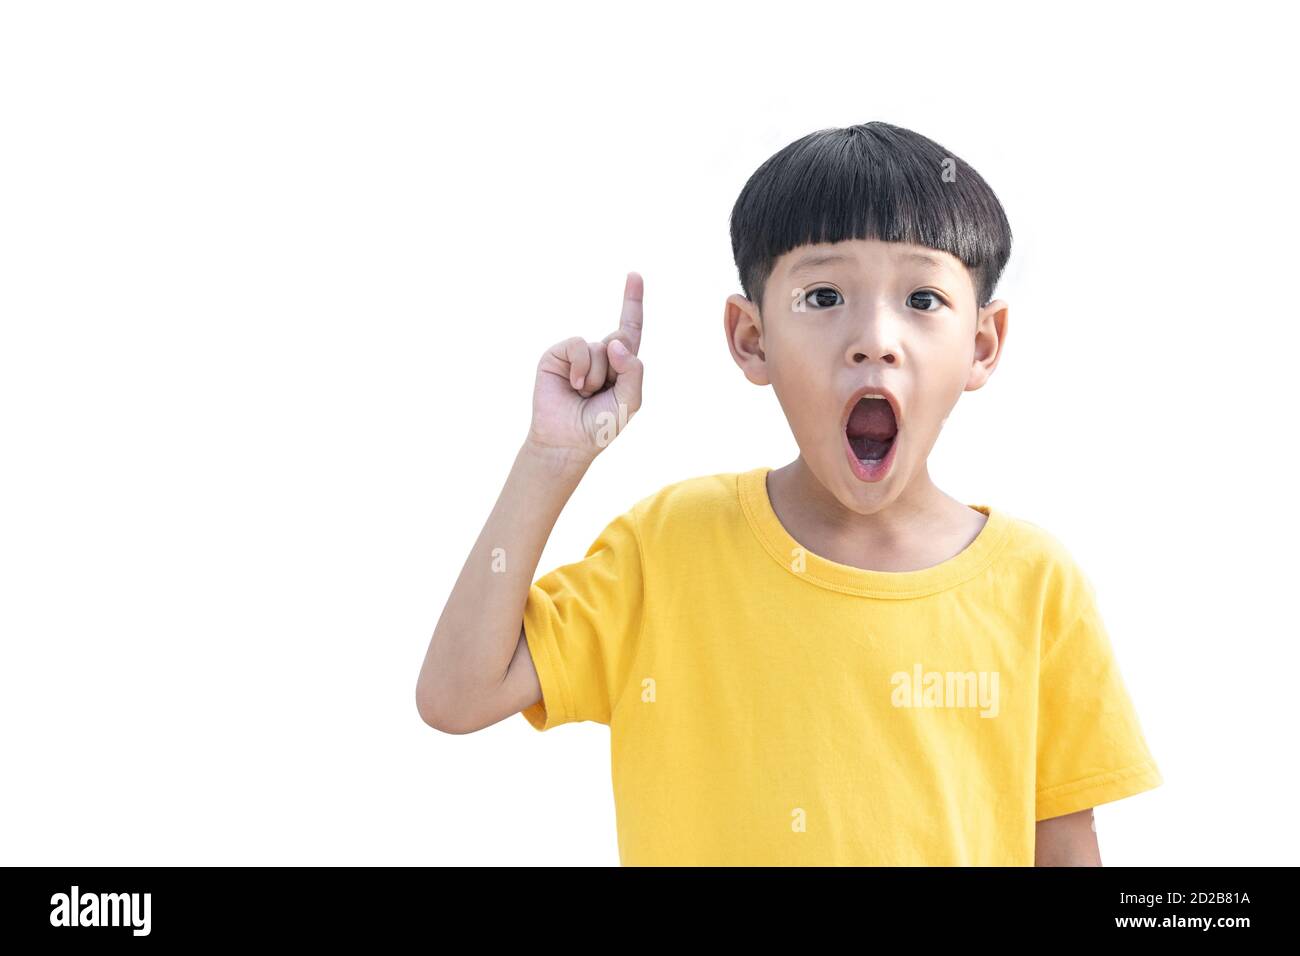 Kleine asiatische junge denken und zeigen Finger nach oben. Asiatische Kind aufgeregt und überrascht isoliert auf weißem Hintergrund. Stockfoto